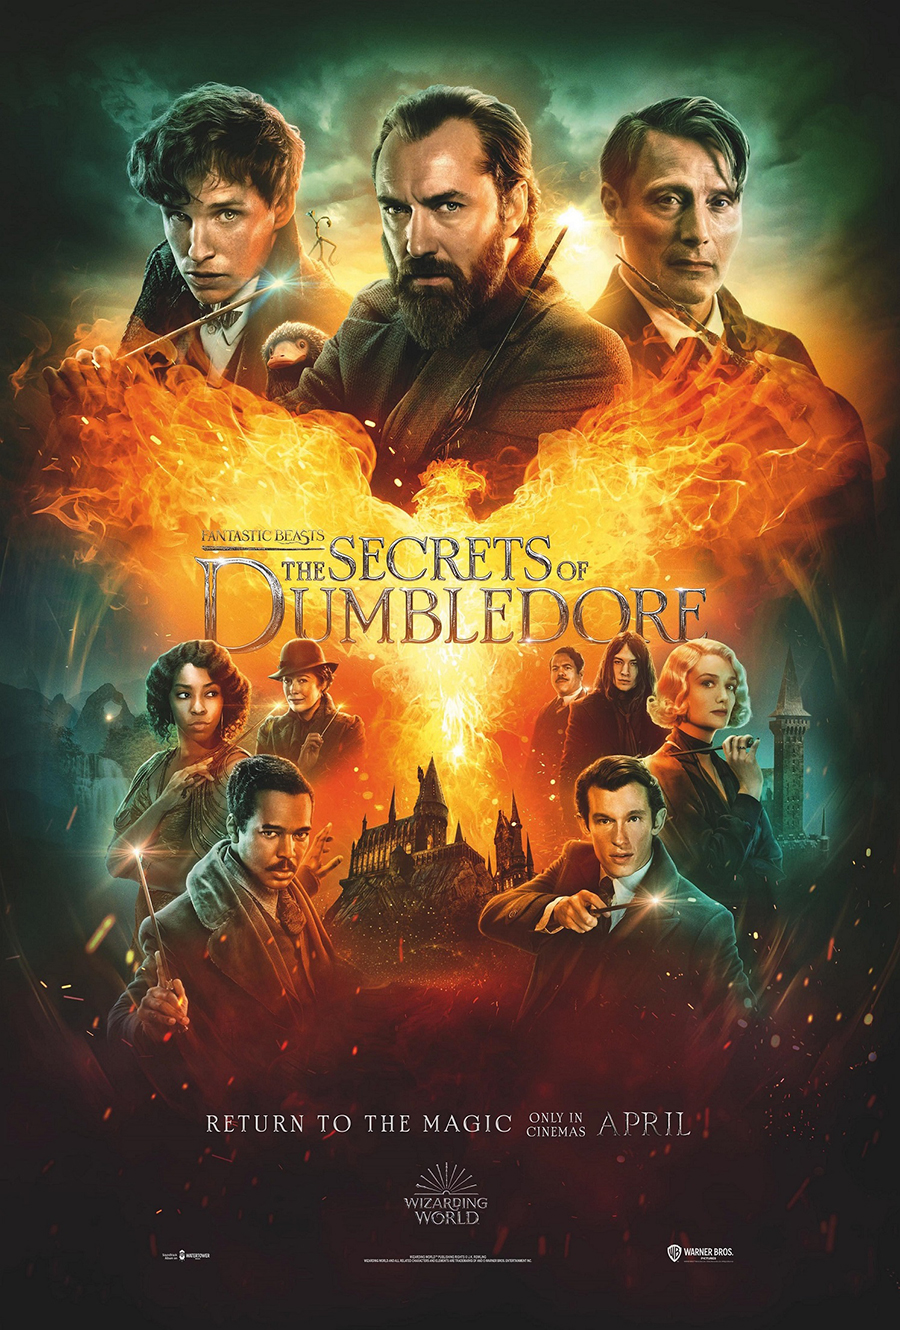 ดูหนังออนไลน์ฟรี Fantastic Beasts The Secrets of Dumbledore 2022 สัตว์มหัศจรรย์ ความลับของดัมเบิลดอร์ 037moviefree